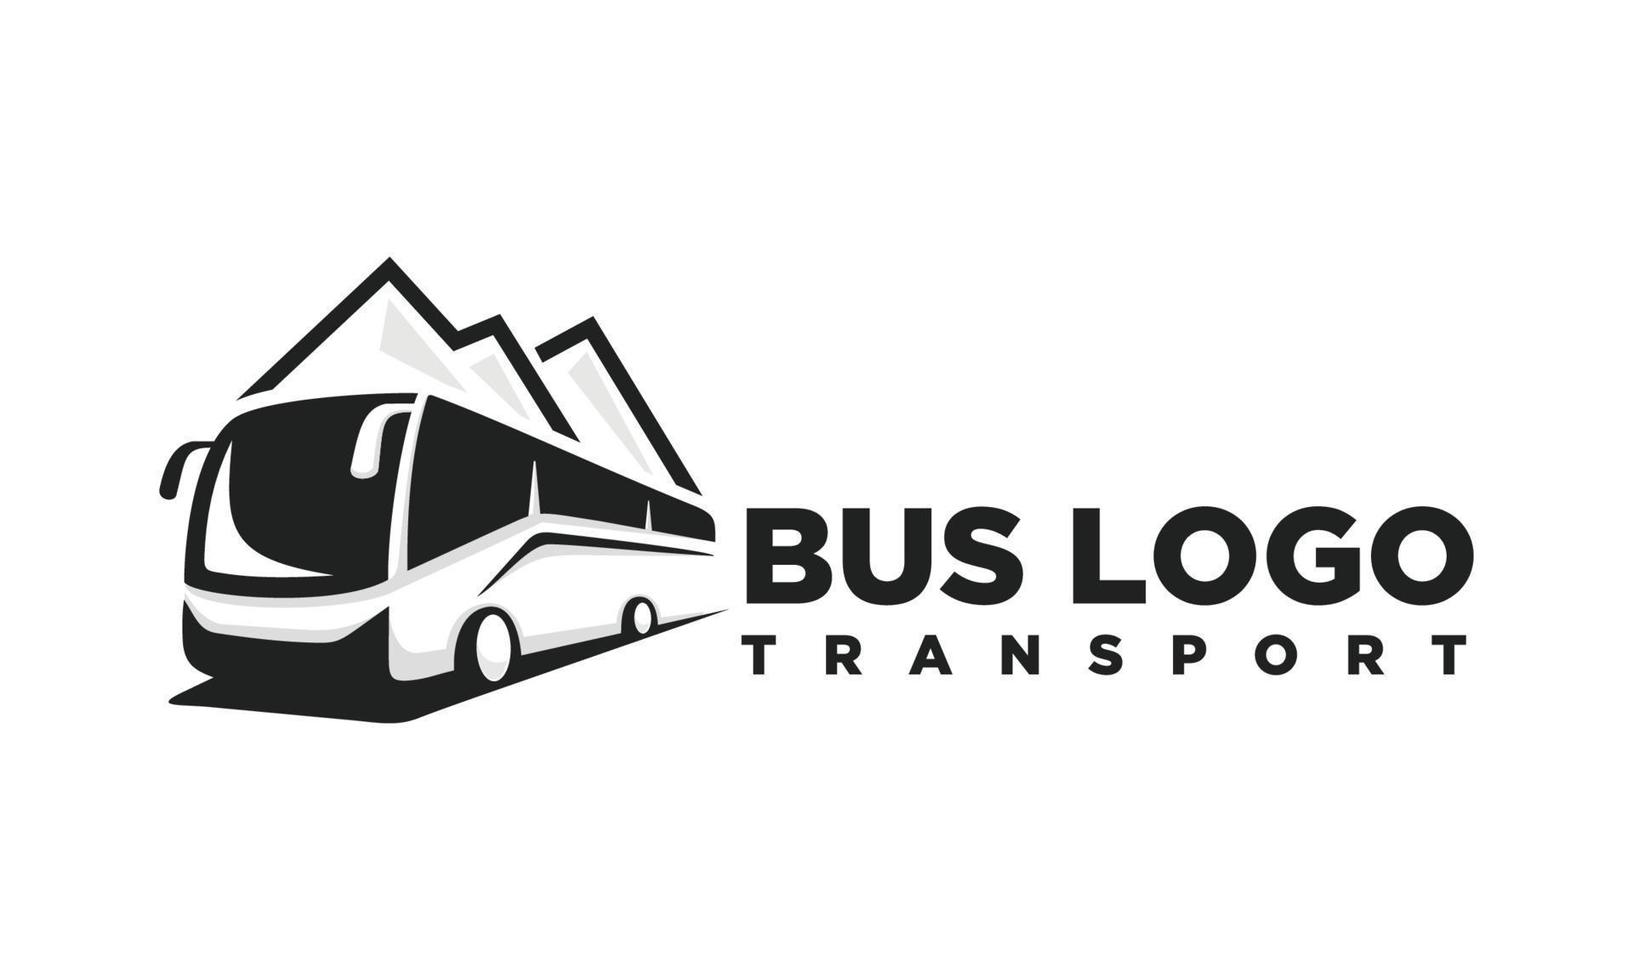 Bus. Travel bus logo design vector